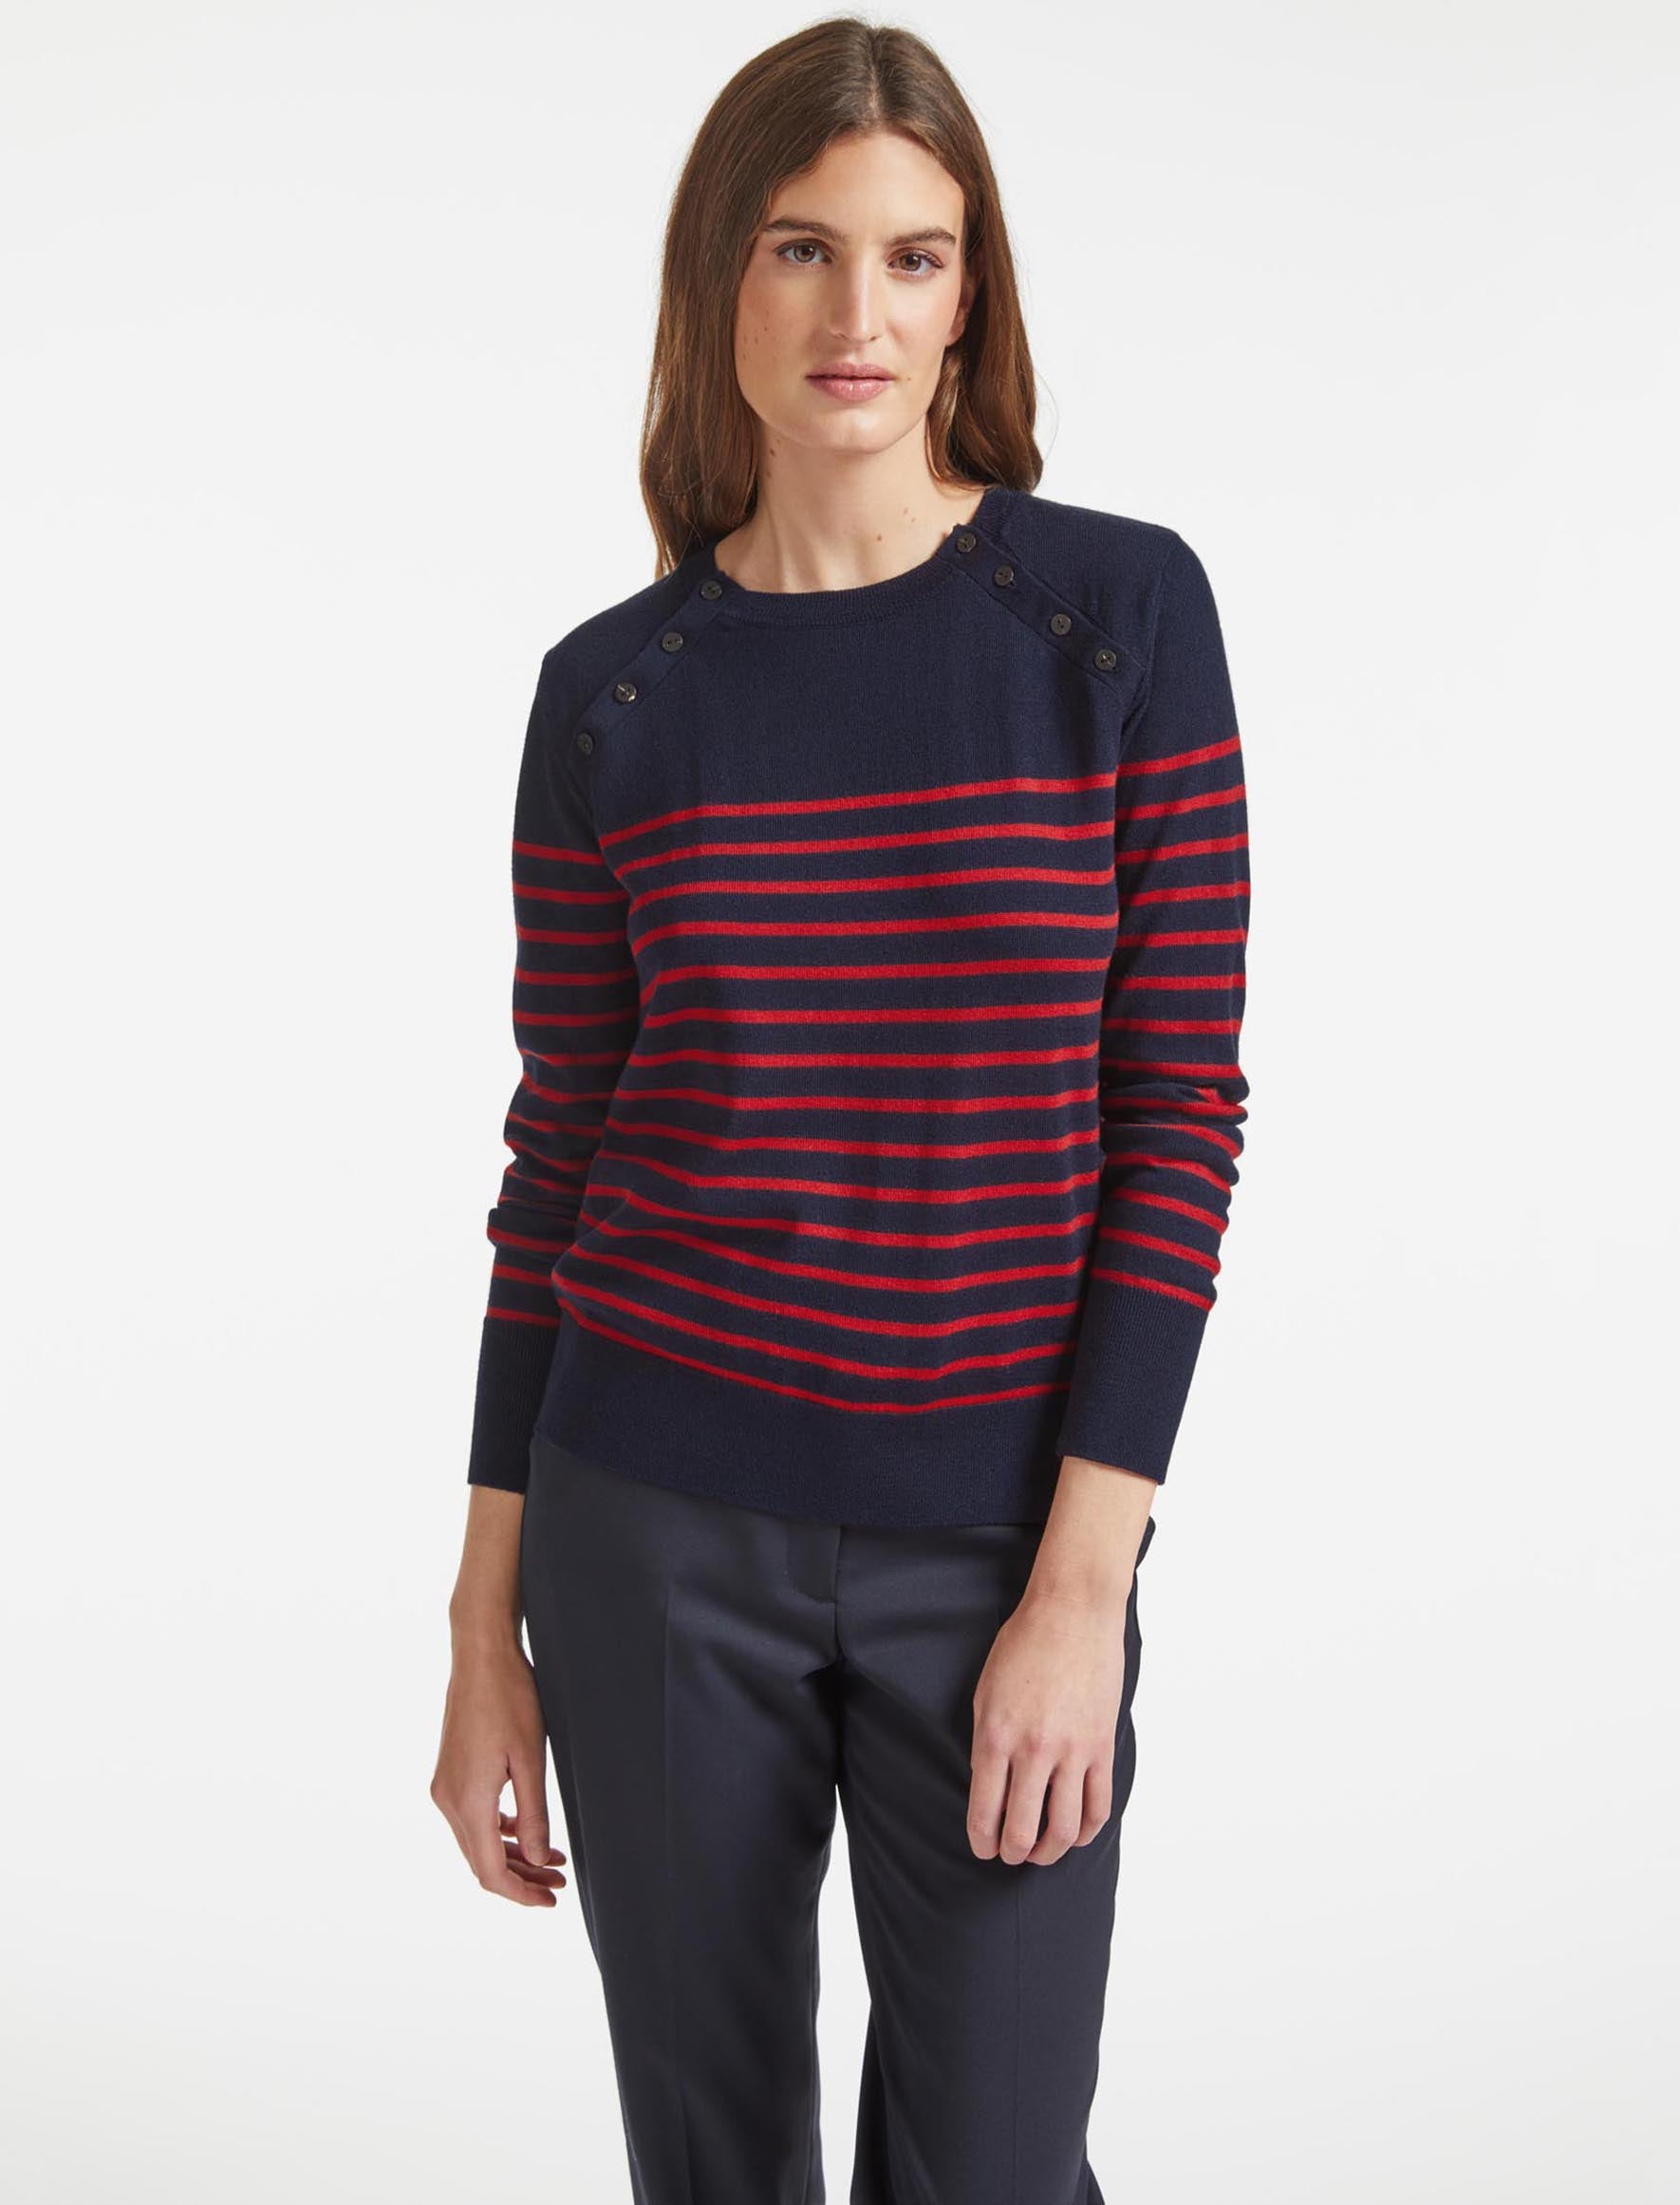 Cefinn Hailey Wool Jumper - Navy Red Stripe